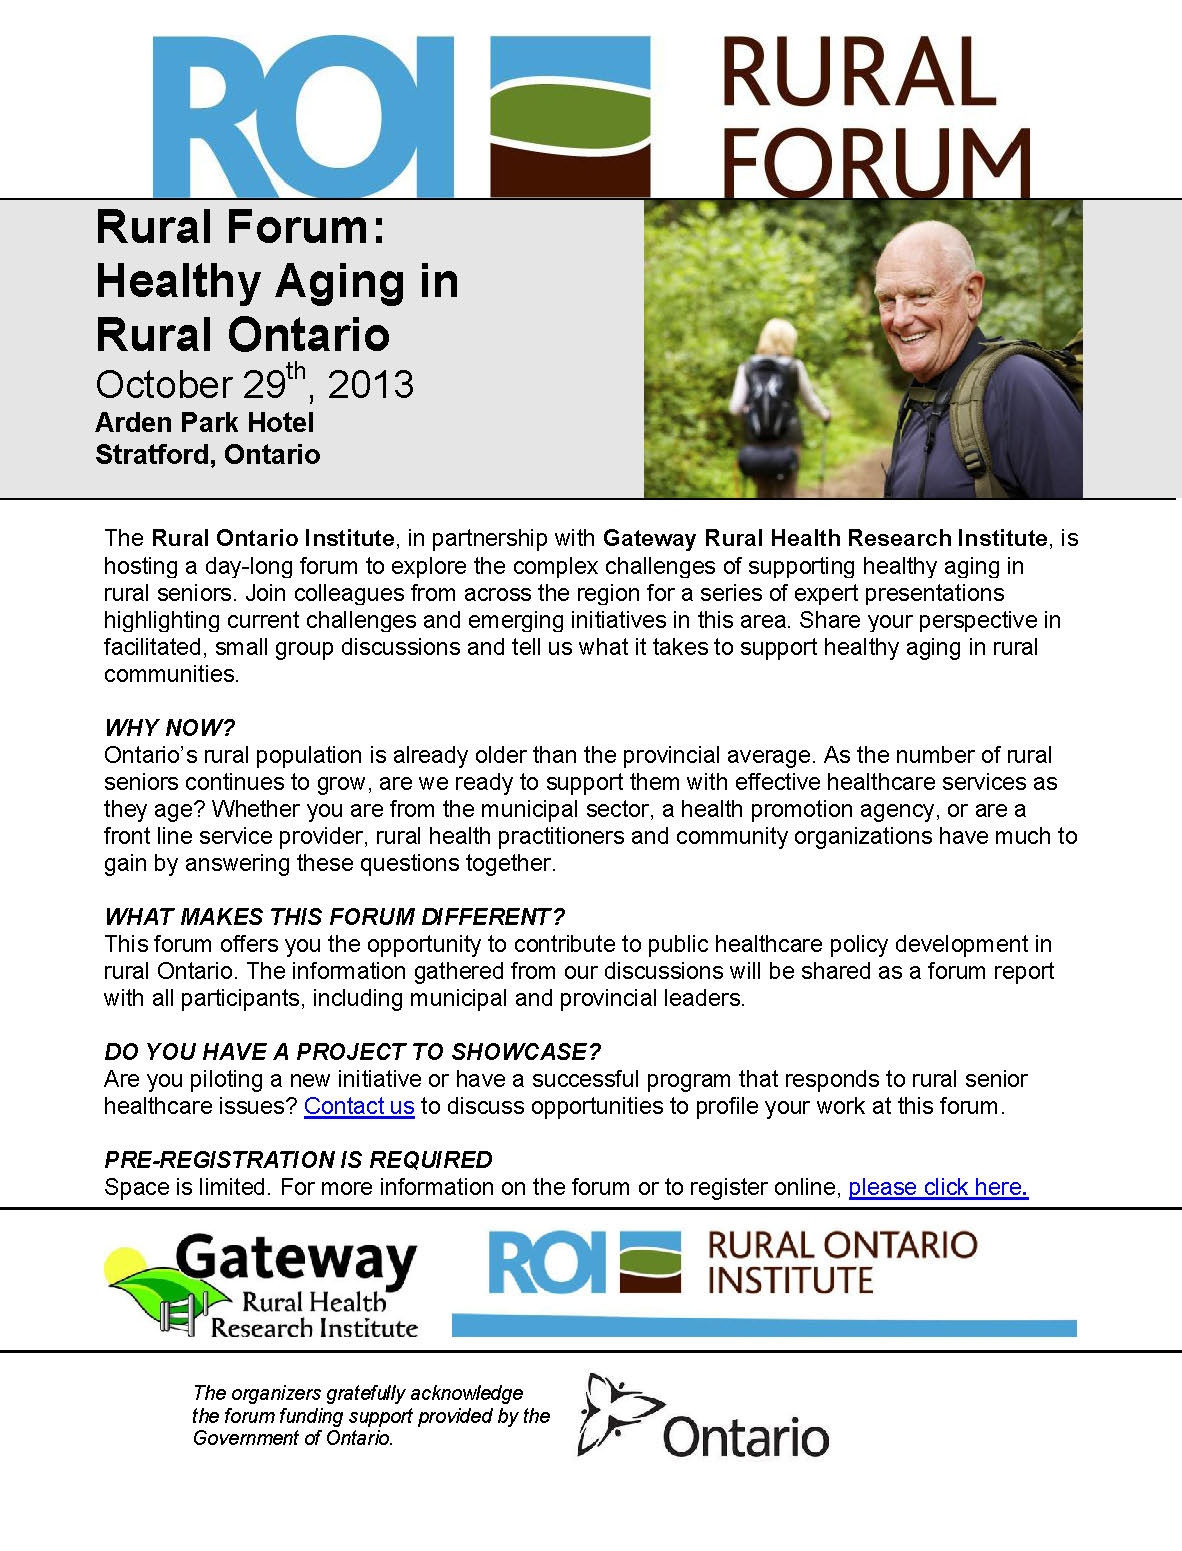 RURAL-FORUM-Healthy-Aging-in-Rural-Ontario-Oct-29-20132.jpg